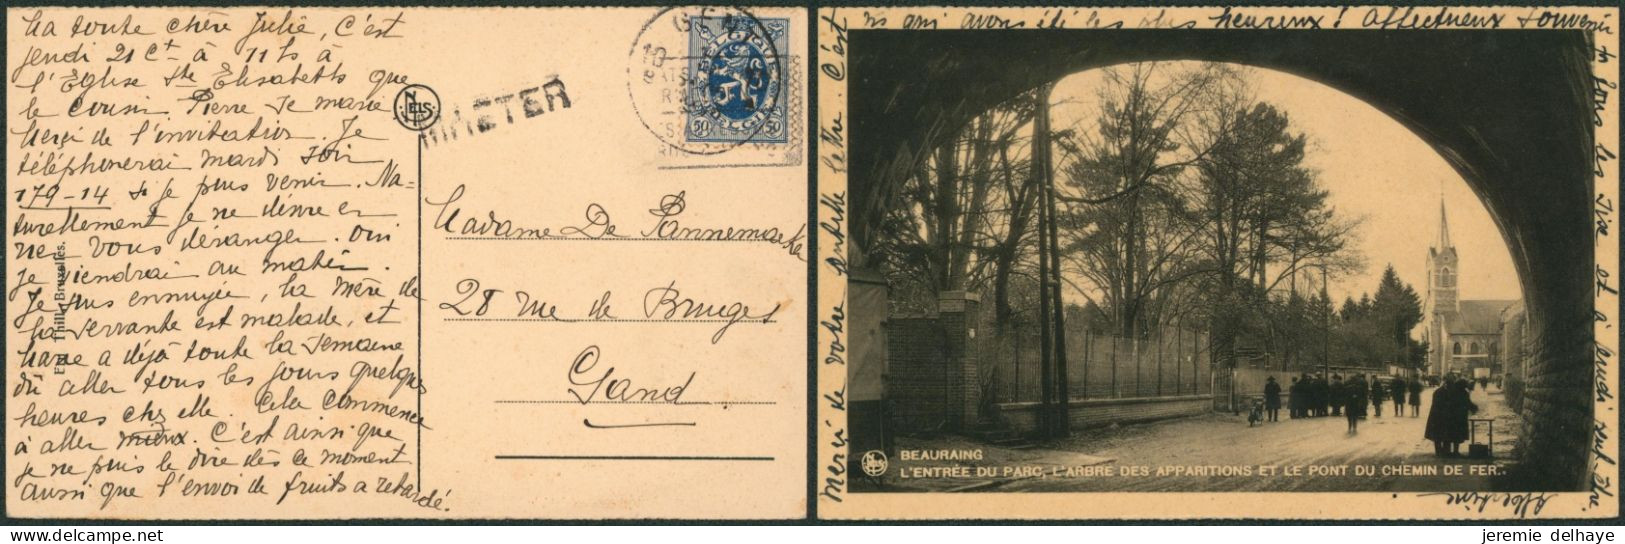 Lion Héraldique 50C Sur CP Expédiée De Gent (193x) + Griffe à L'originie MAETER > Gand - Linear Postmarks